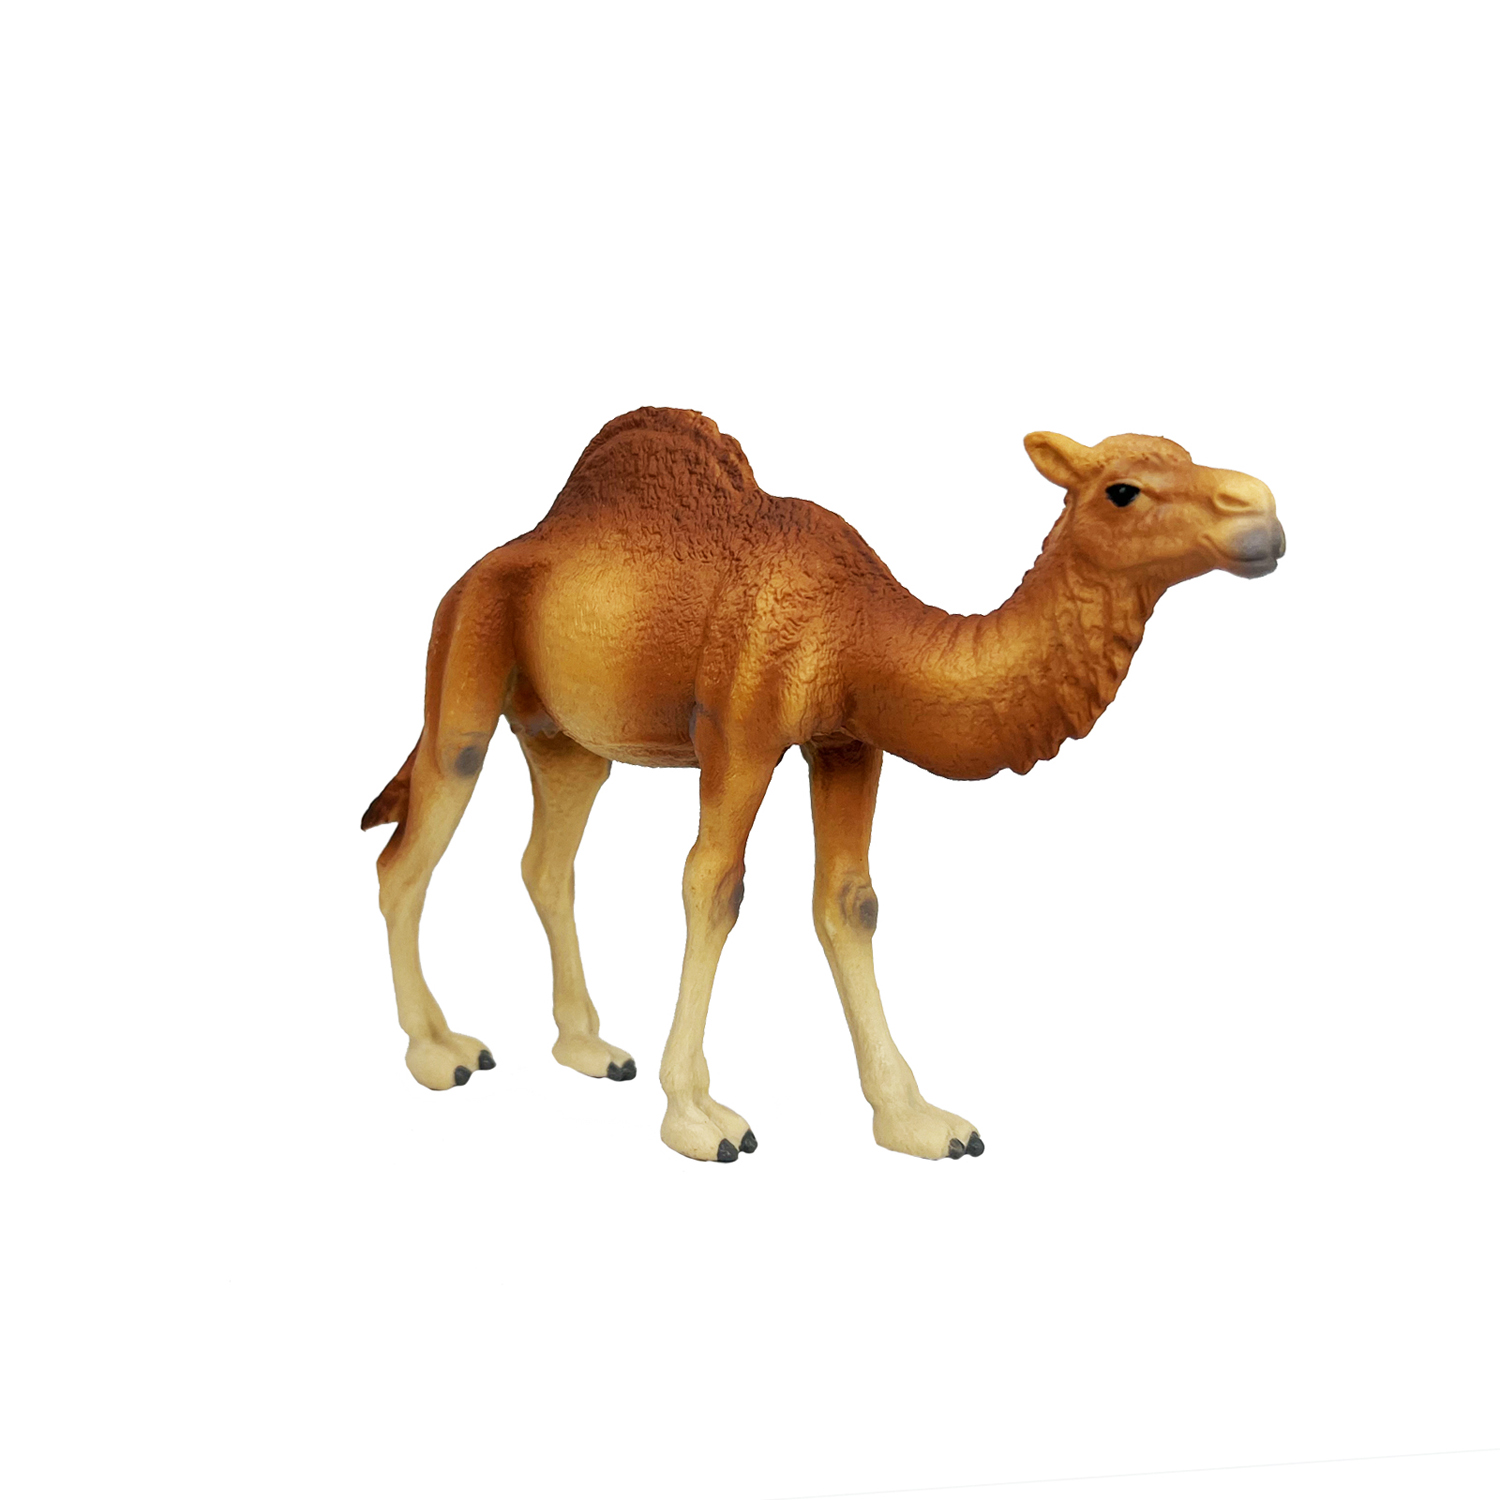 Фигурка животного Детское Время Одногорбый верблюд породы Дромадер - фото 6